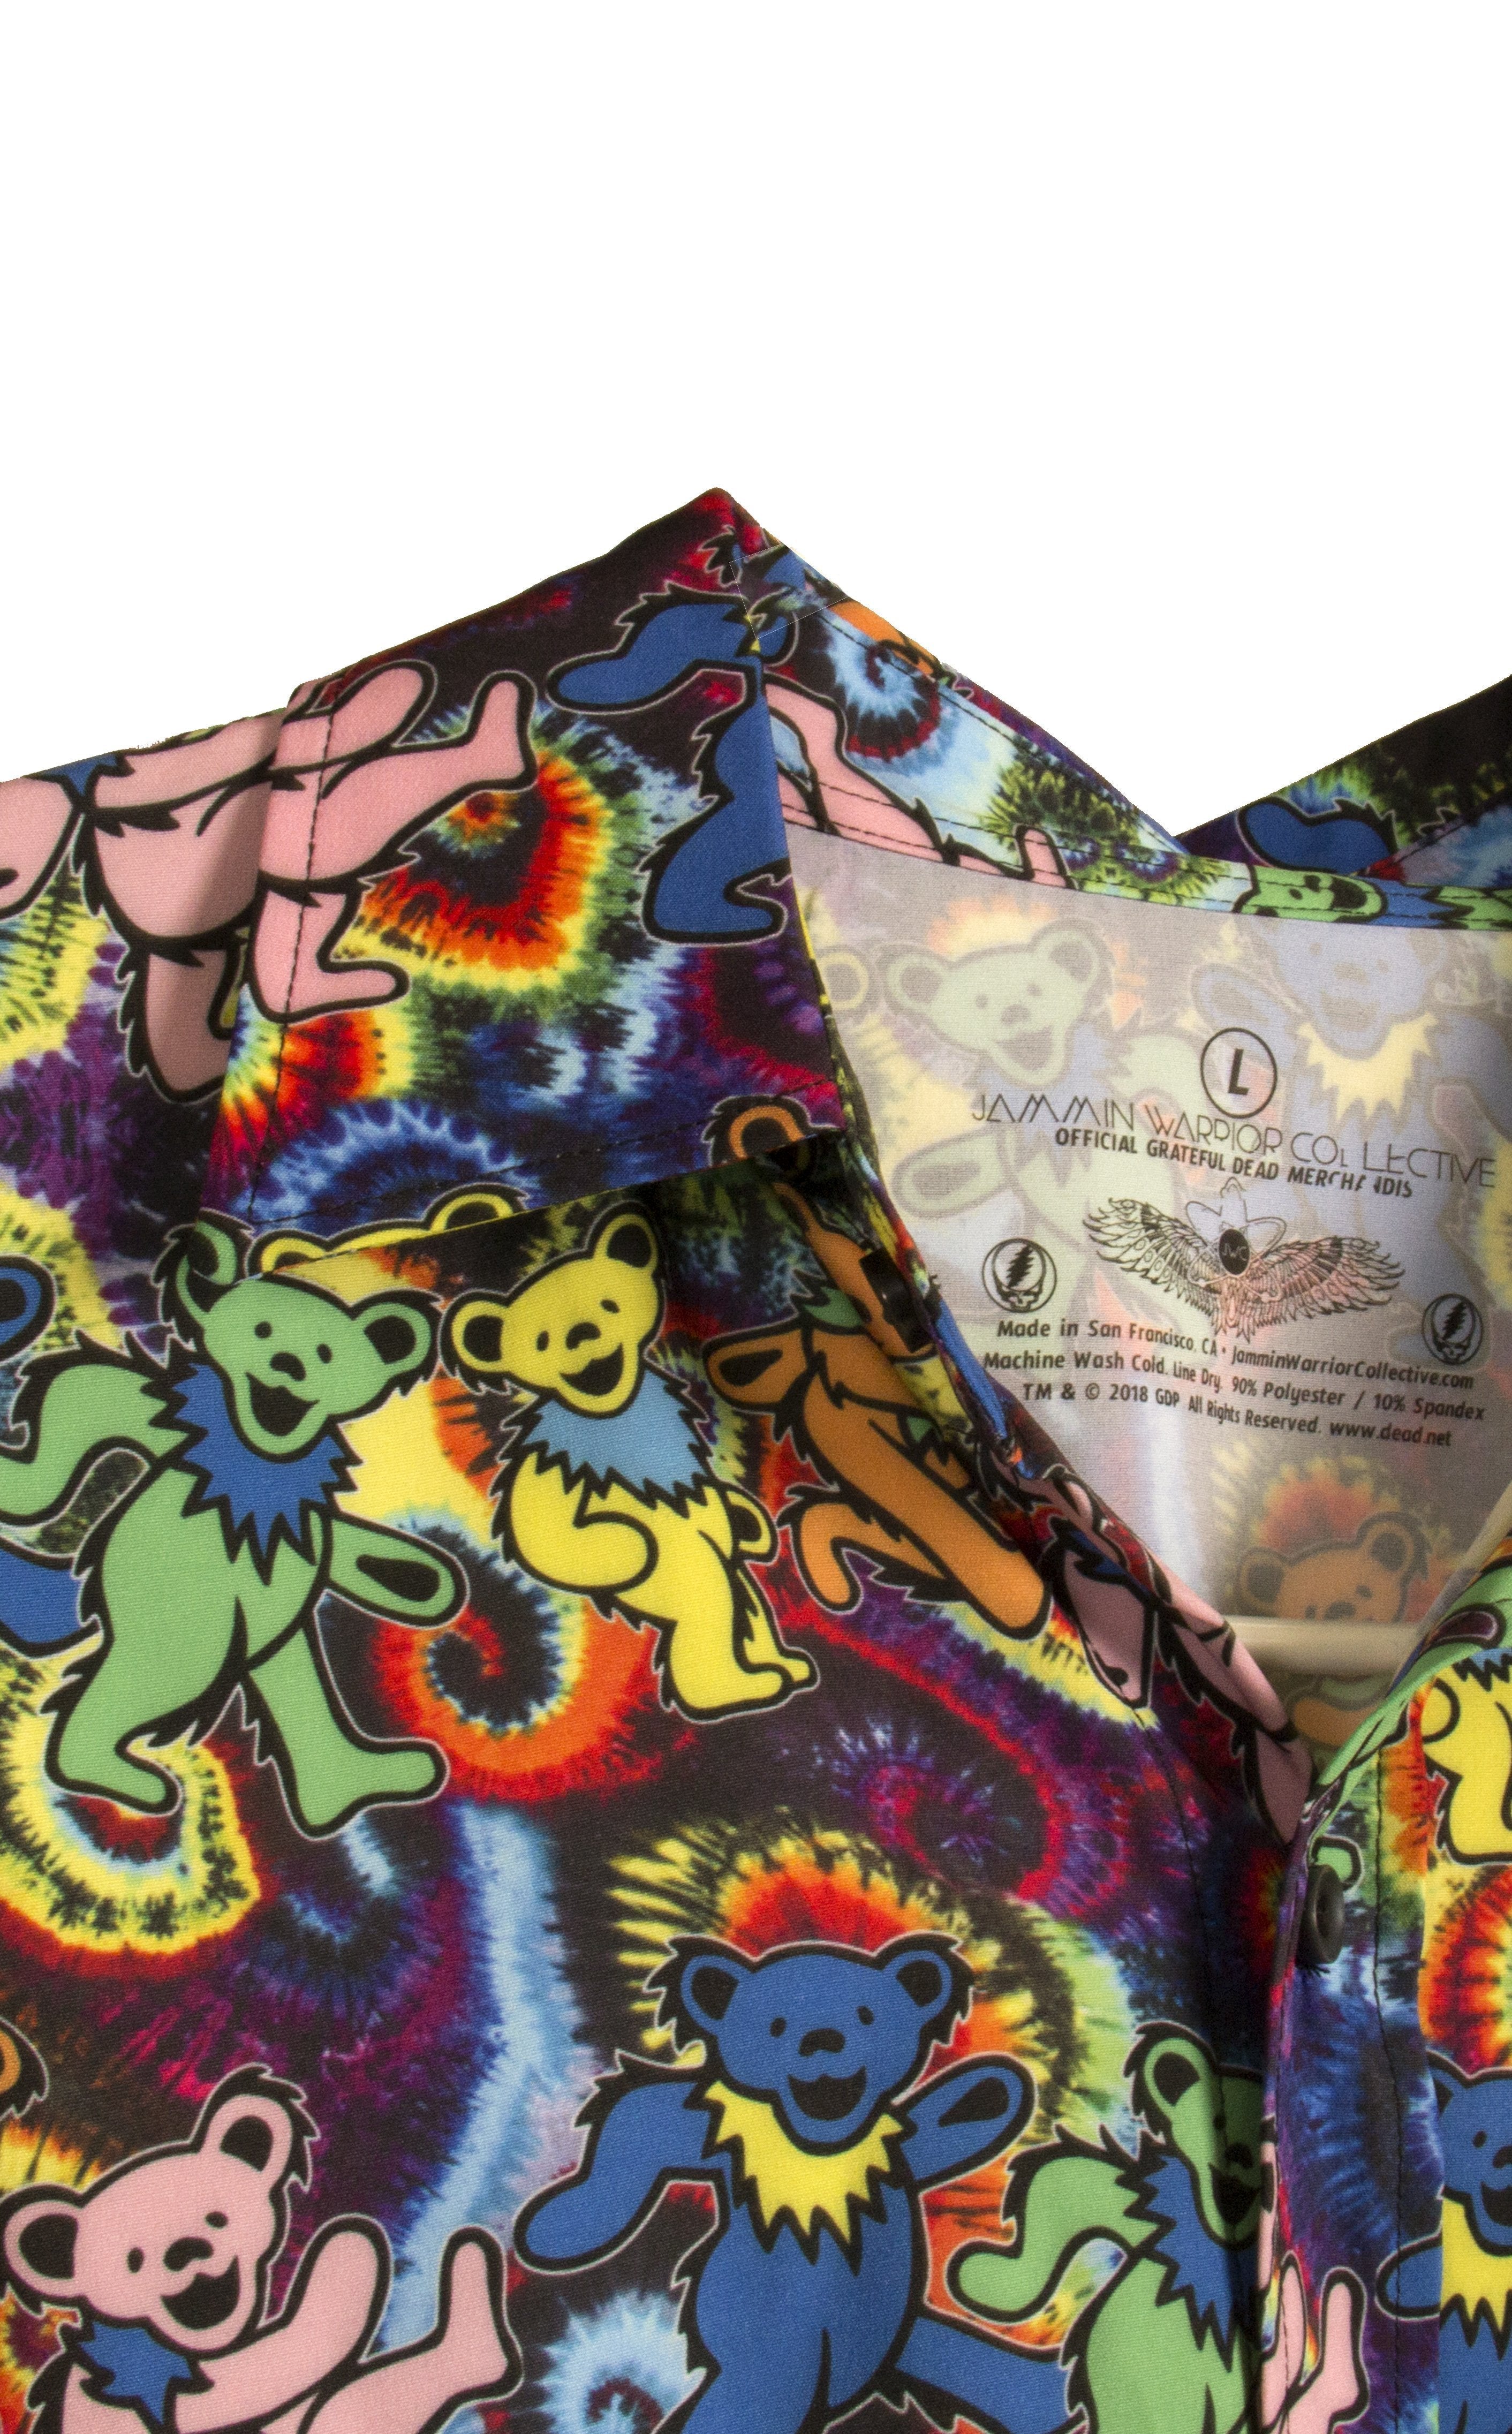 Dancing Bears Grateful Dead Dress Shirt - Warrior Within Designs ,Shirt 